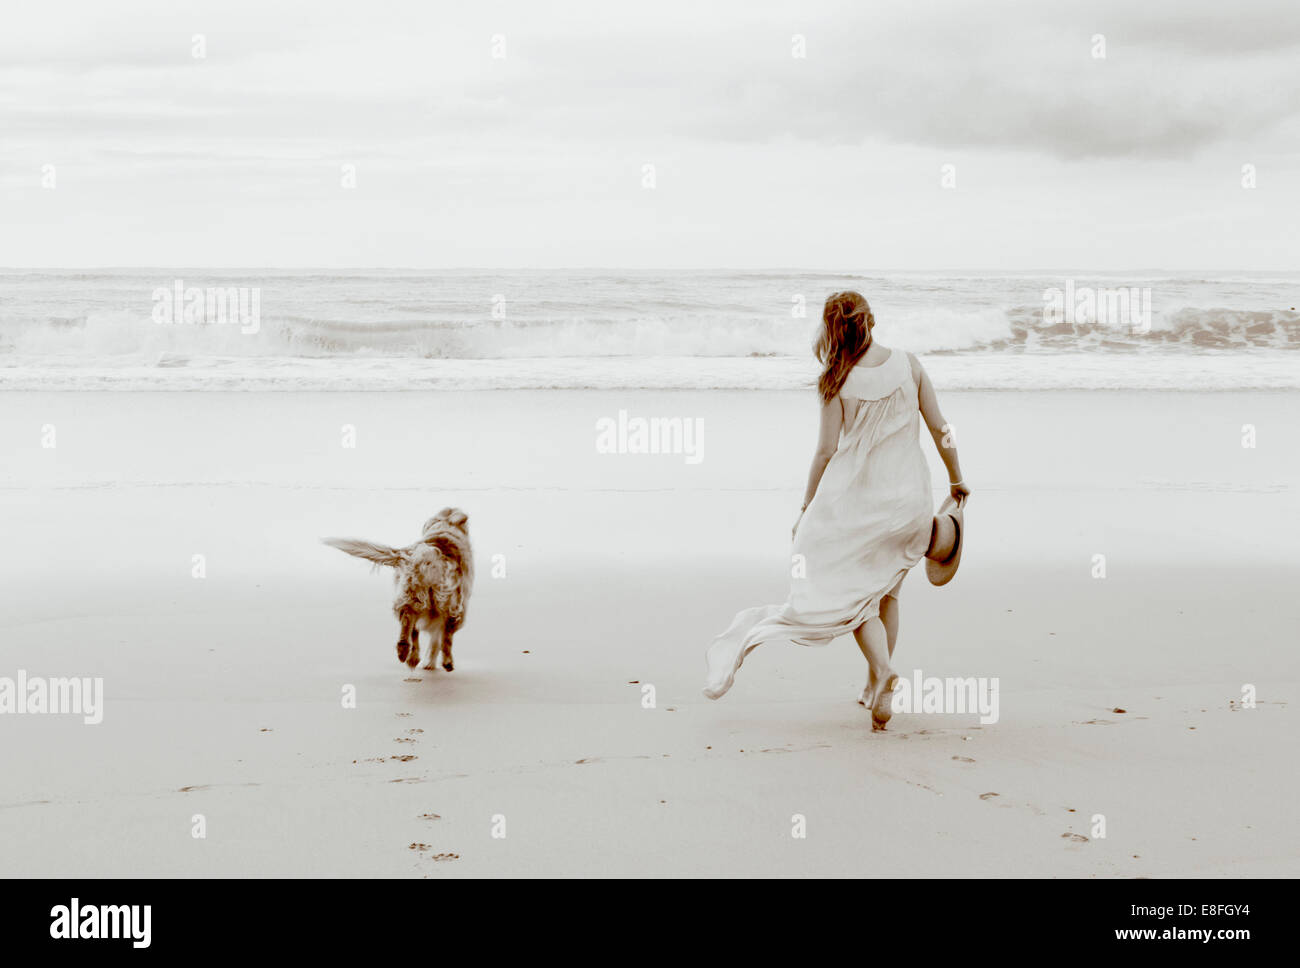 Femme marchant sur la plage avec son chien, Afrique du Sud Banque D'Images